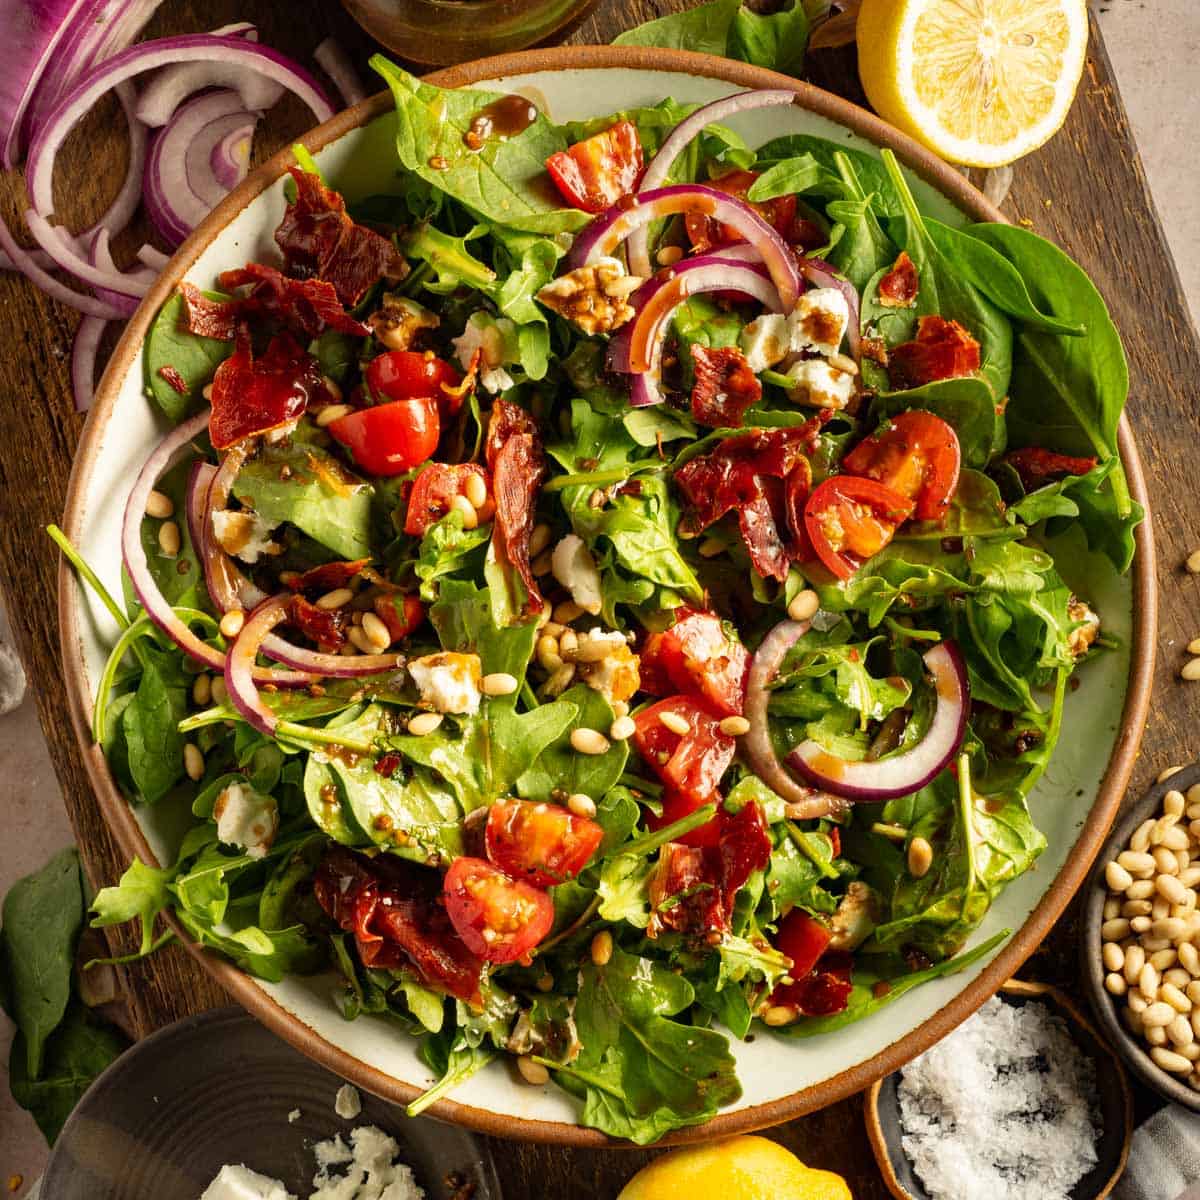 Spinach Arugula Salad with Crispy Prosciutto